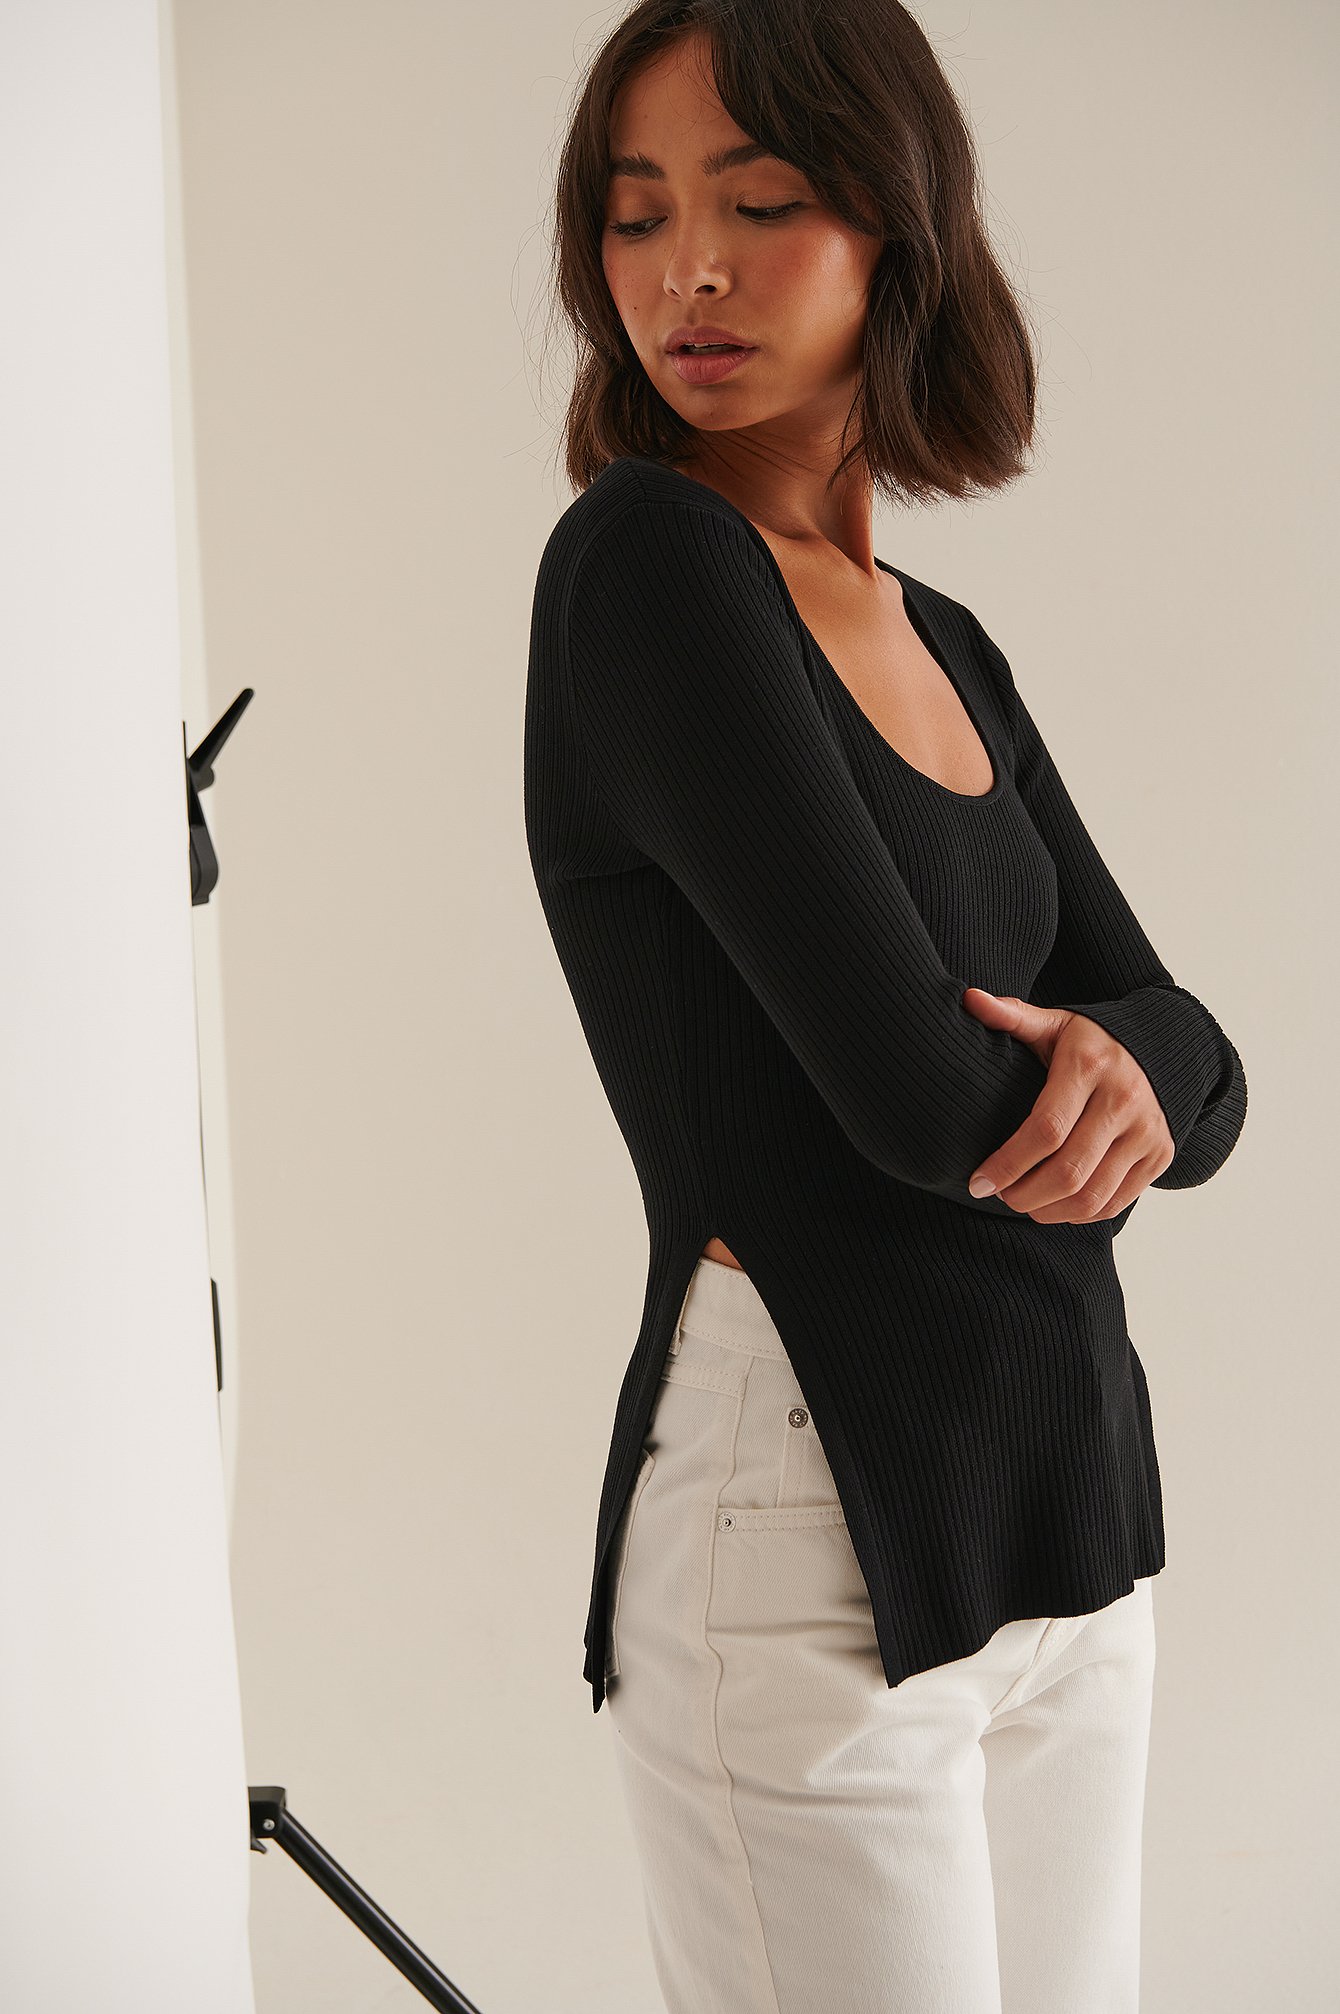 Sofia Coelho x NA-KD Side Slit Long Sleeve Top - Black